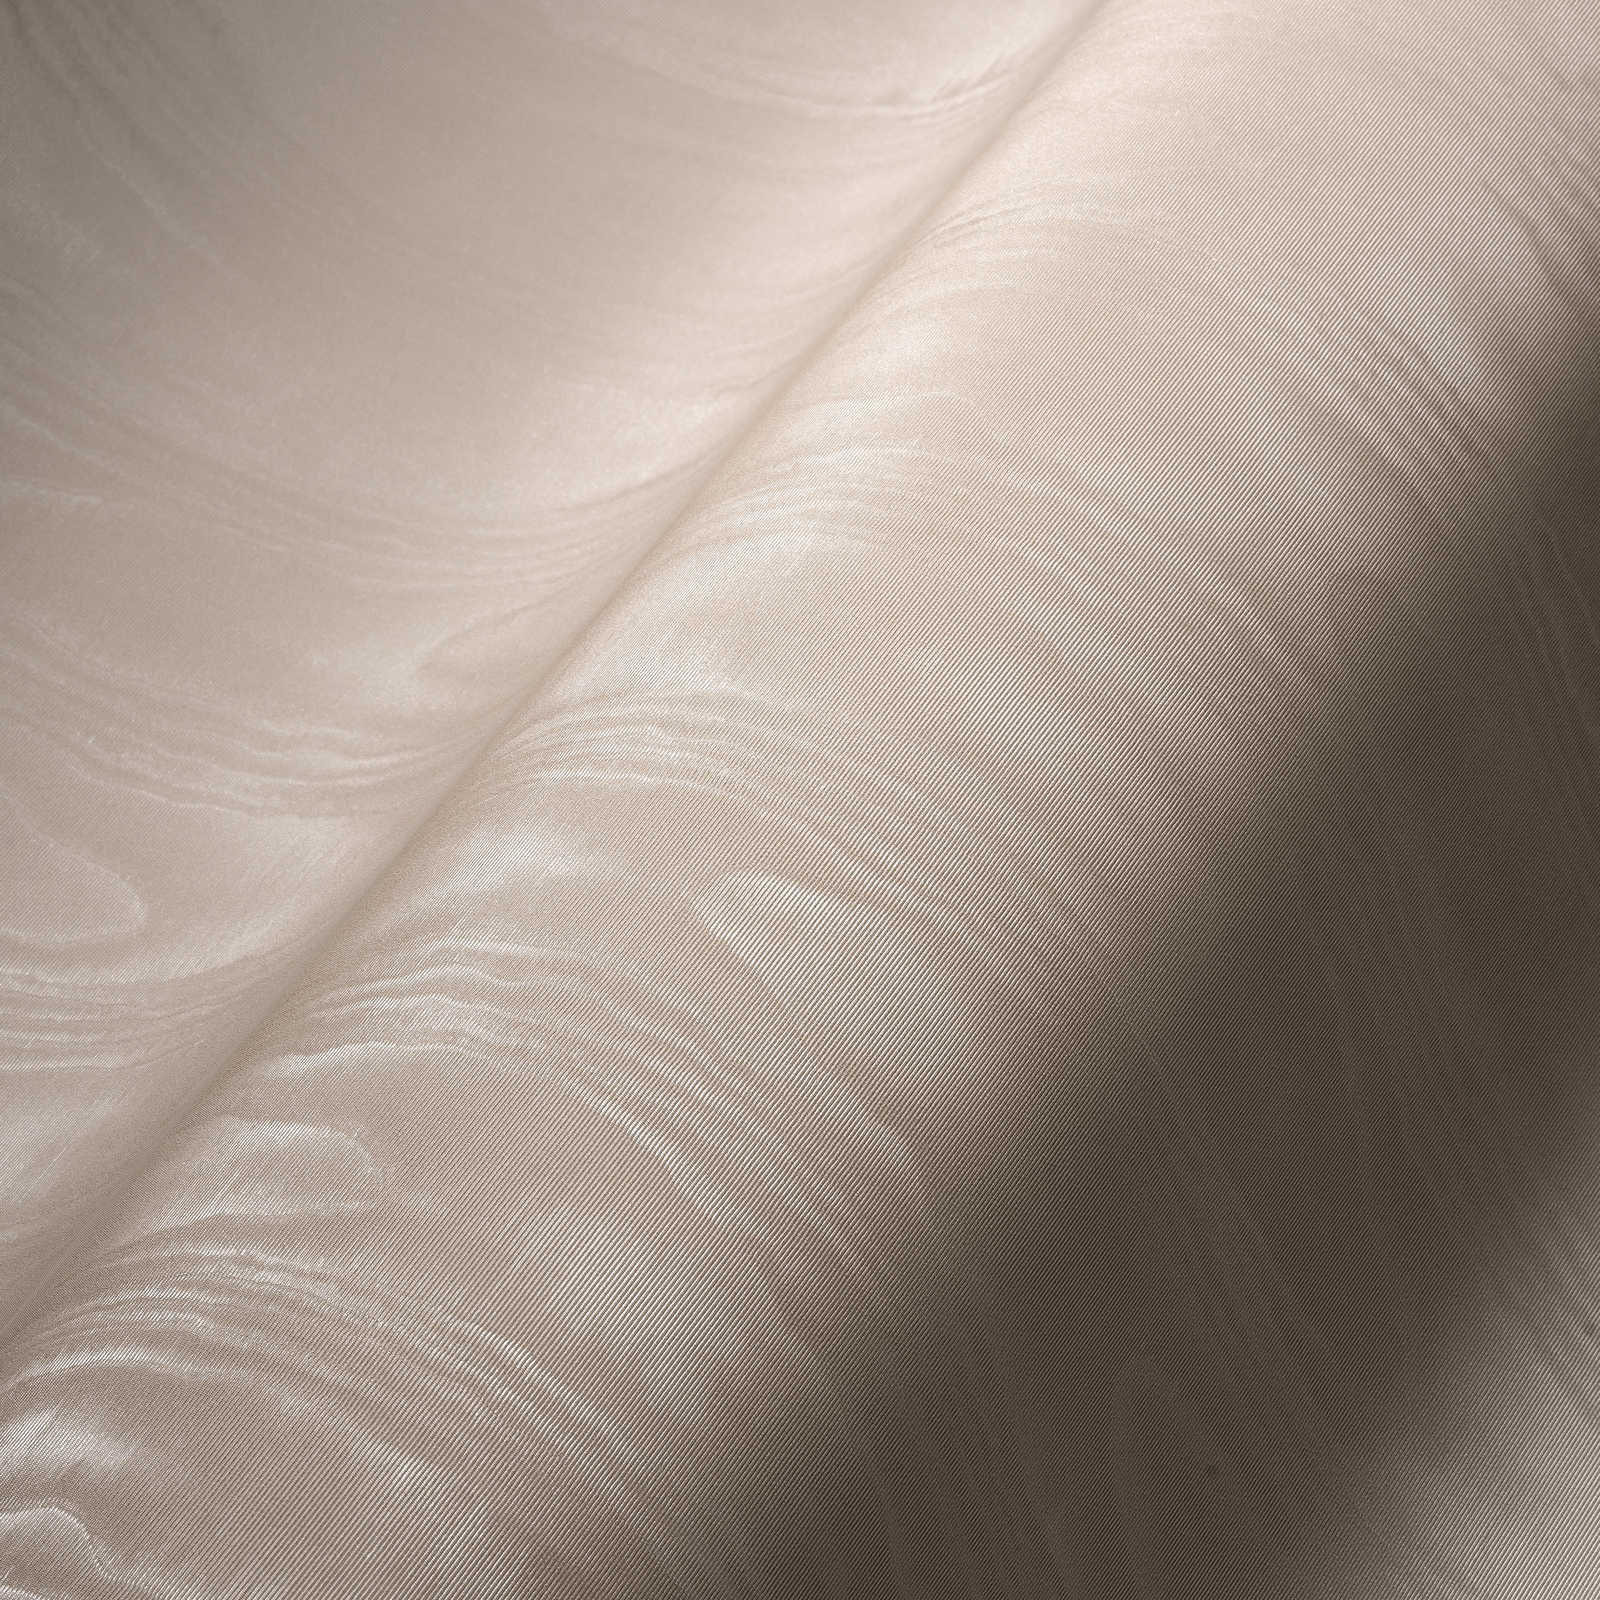             Cream non-woven wallpaper moiré effect & textile texture
        